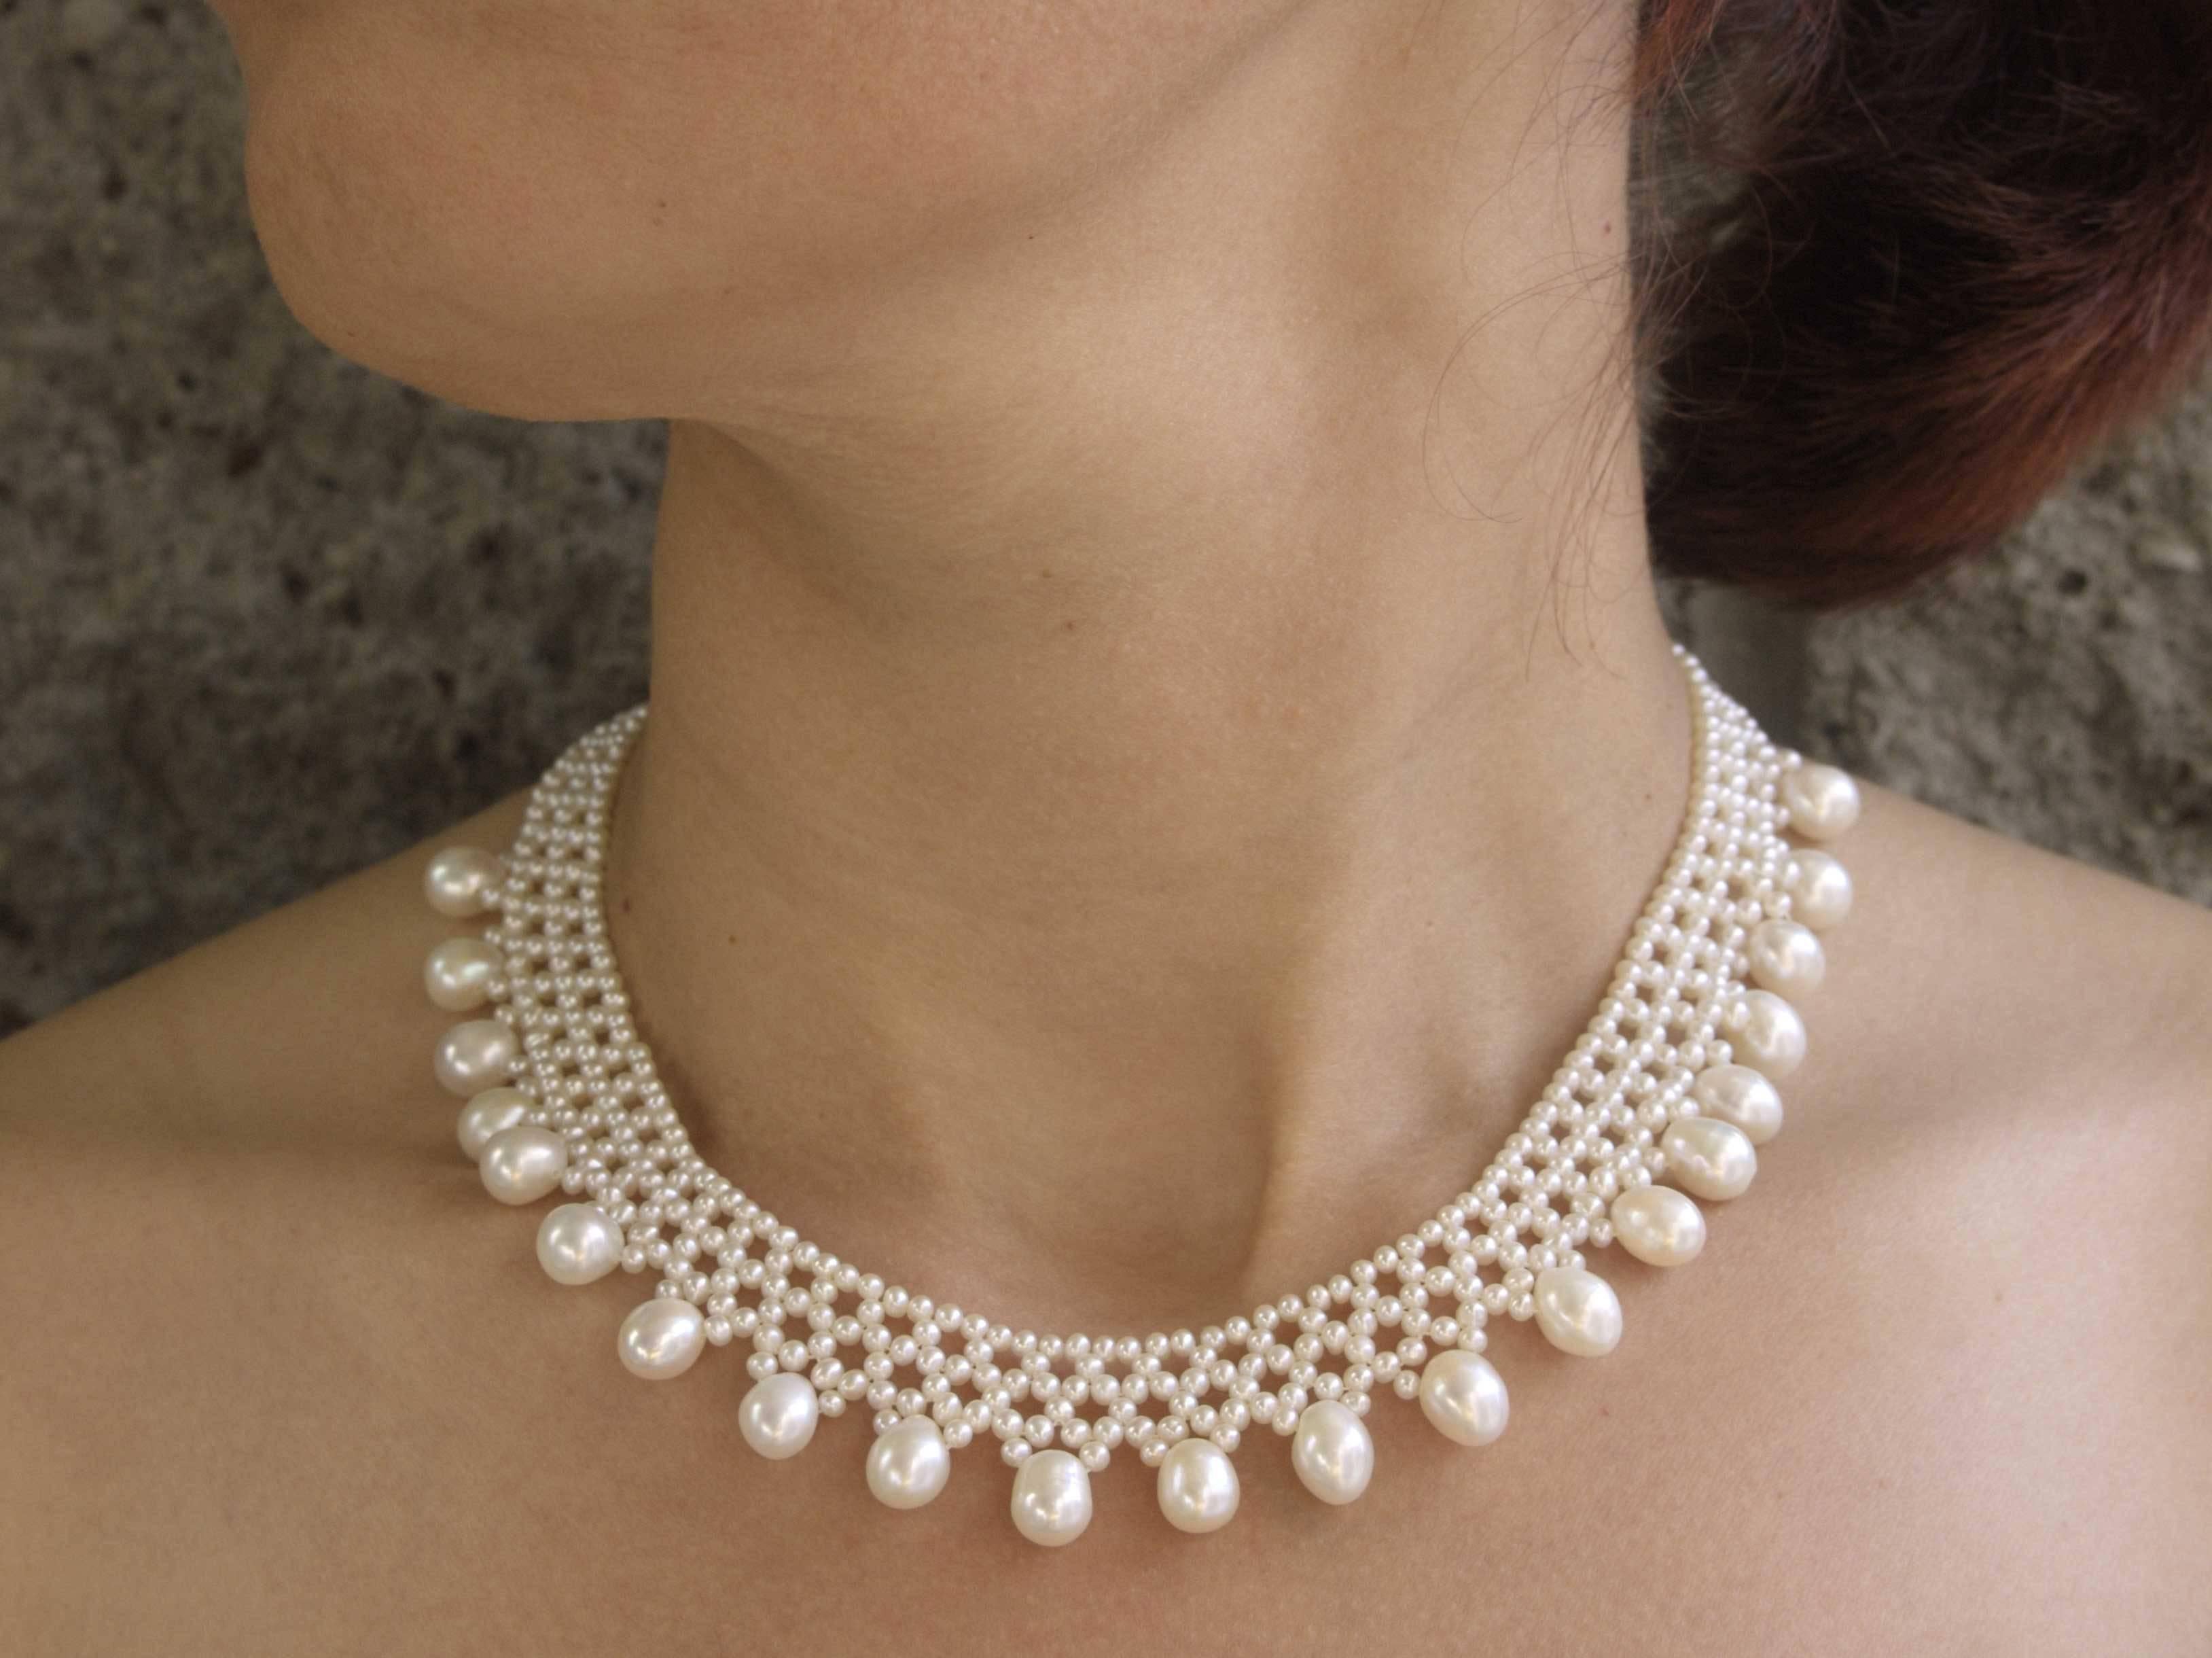 Diese handgeflochtene Halskette besteht aus 2,5-3 mm großen Perlen, die ein spitzenartiges Design ergeben, das sich perfekt an den Kragen anpasst.         ( 16,5 Zoll  lang) . Die Halskette ist spitz zulaufend und passt sich der Rundung des